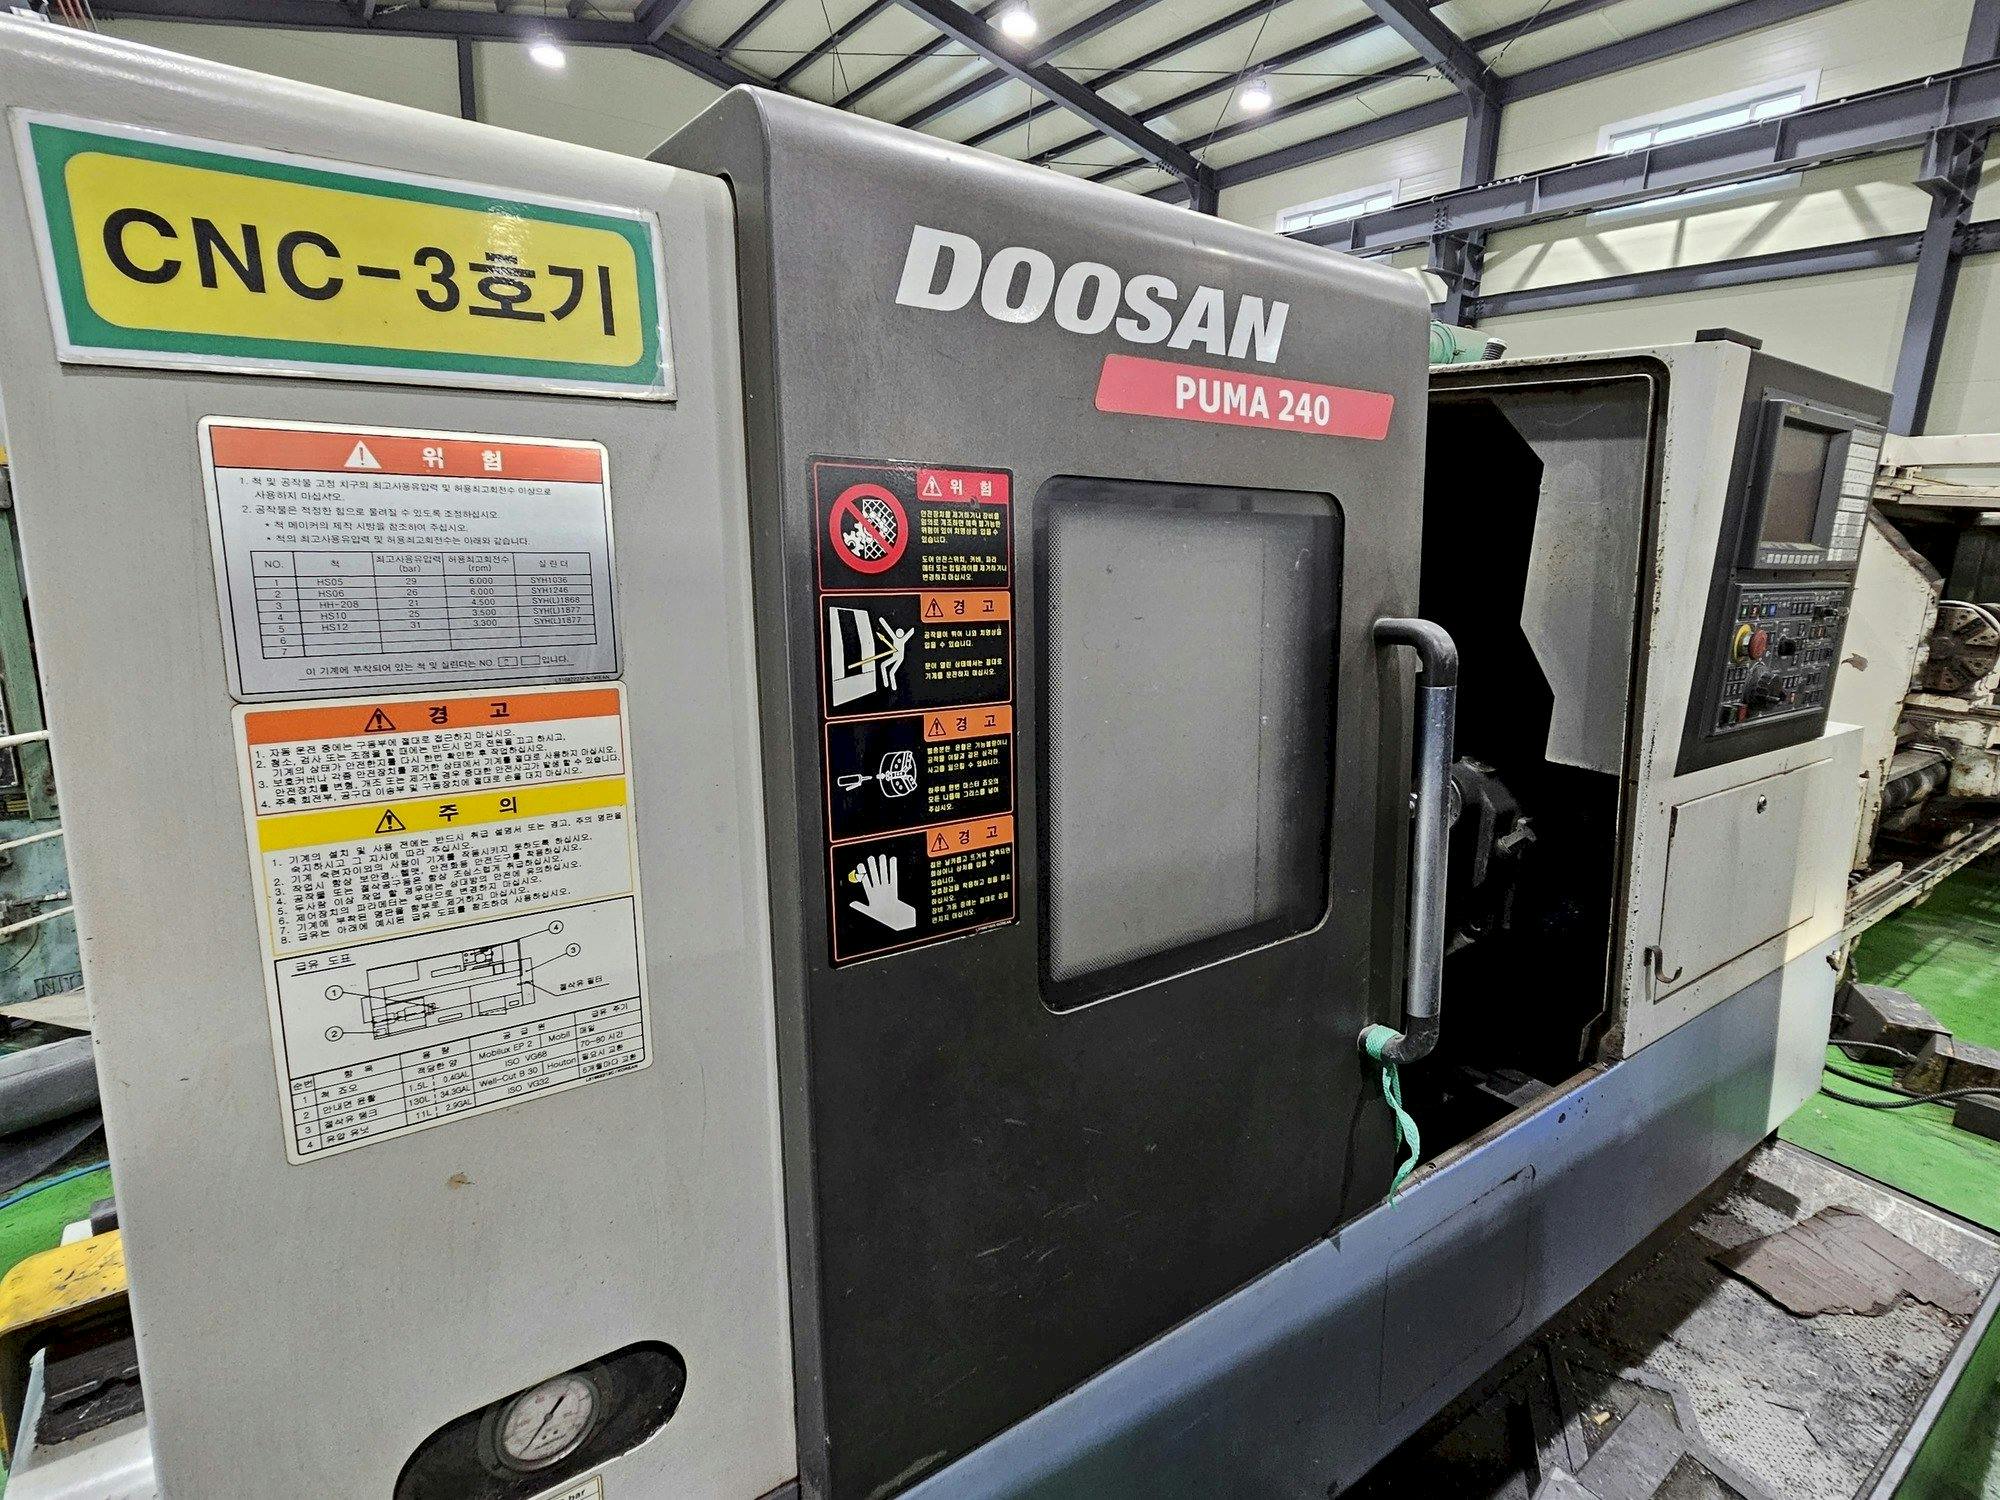 Vista frontal de la máquina Doosan Puma 240